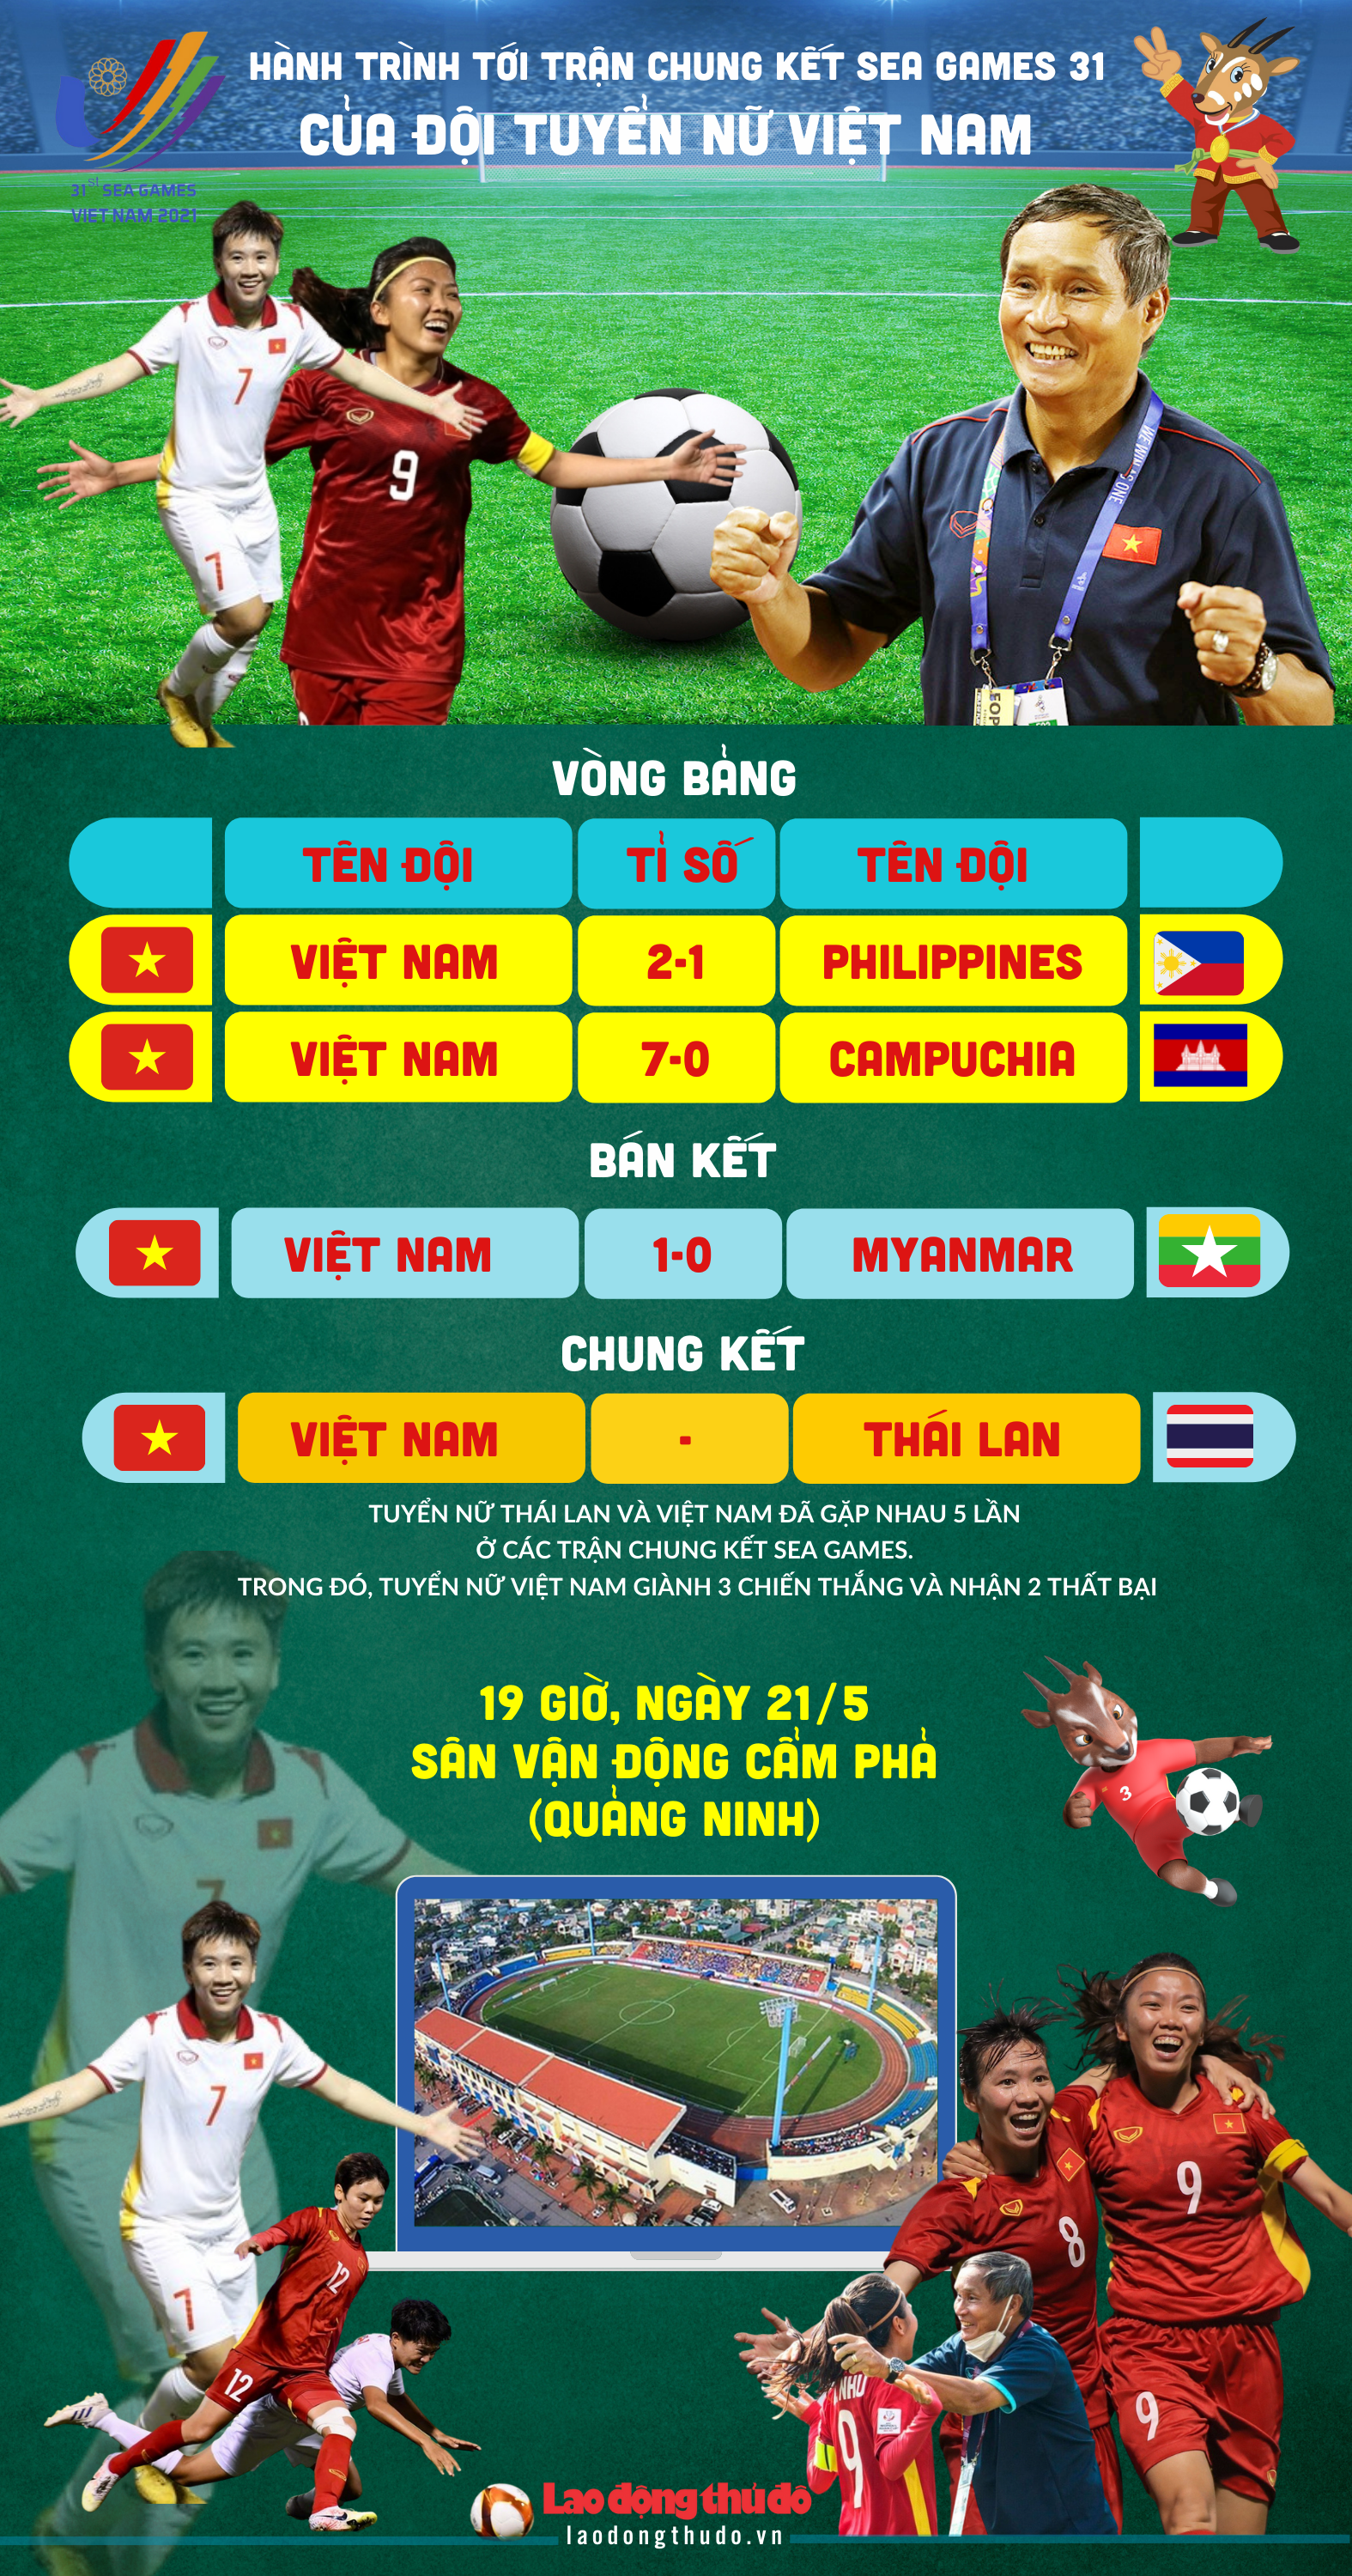 [Infographics]: Hành trình đến trận chung kết SEA Games 31 của tuyển nữ Việt Nam